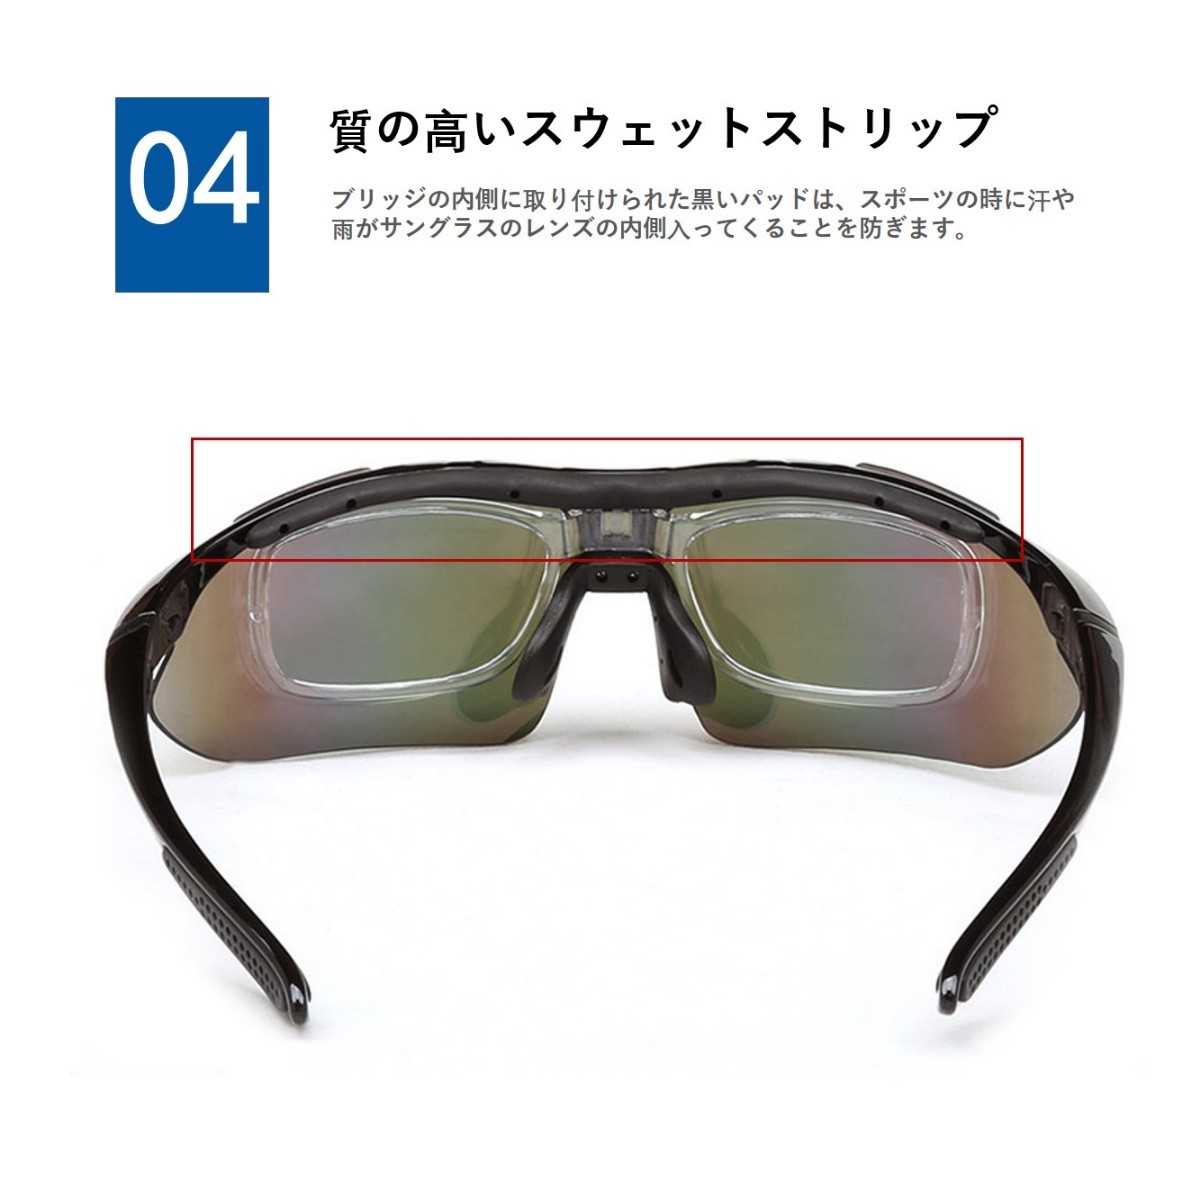 サングラス スポーツサングラス 偏光レンズ  偏光グラス 専用交換レンズ５枚 フレームセット バンド付 収納ケース付 